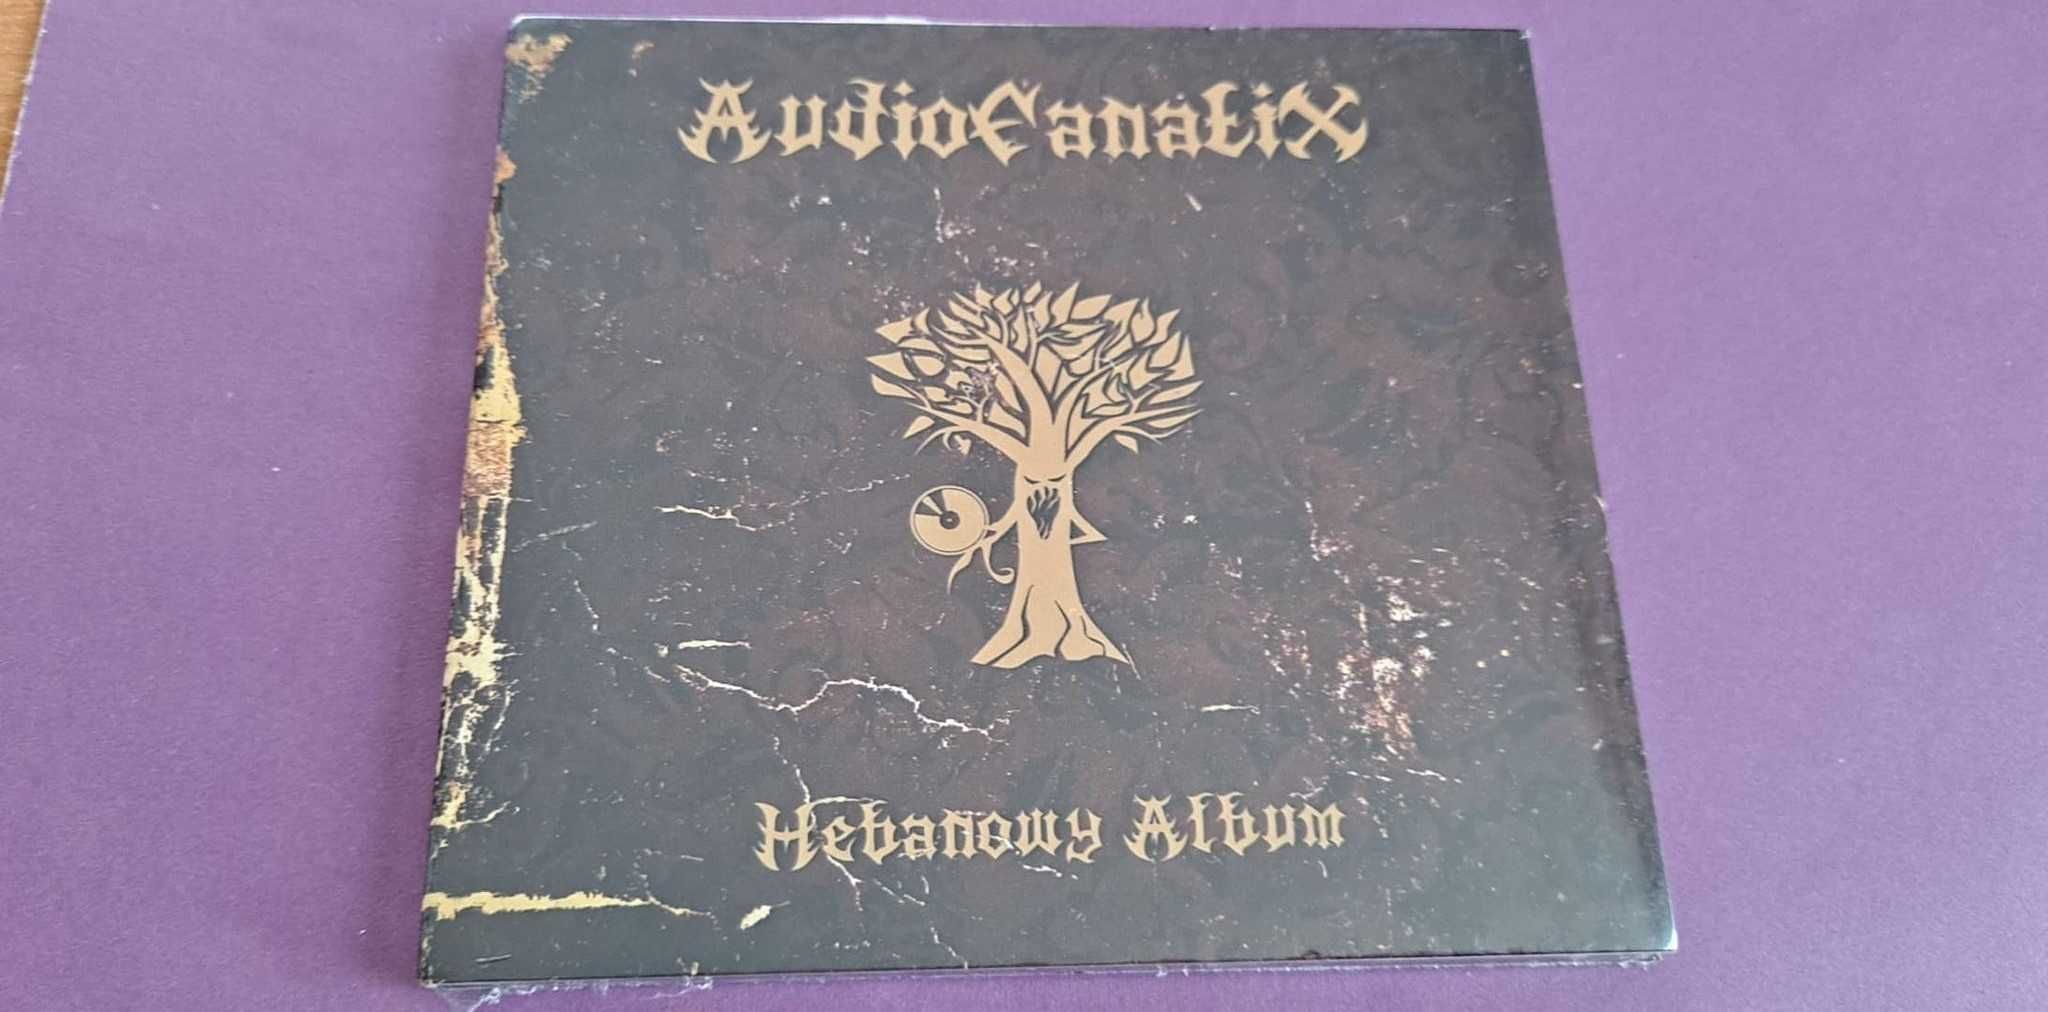 AudioFanatix - Hebanowy Album CD nowa folia , hip hop - rap